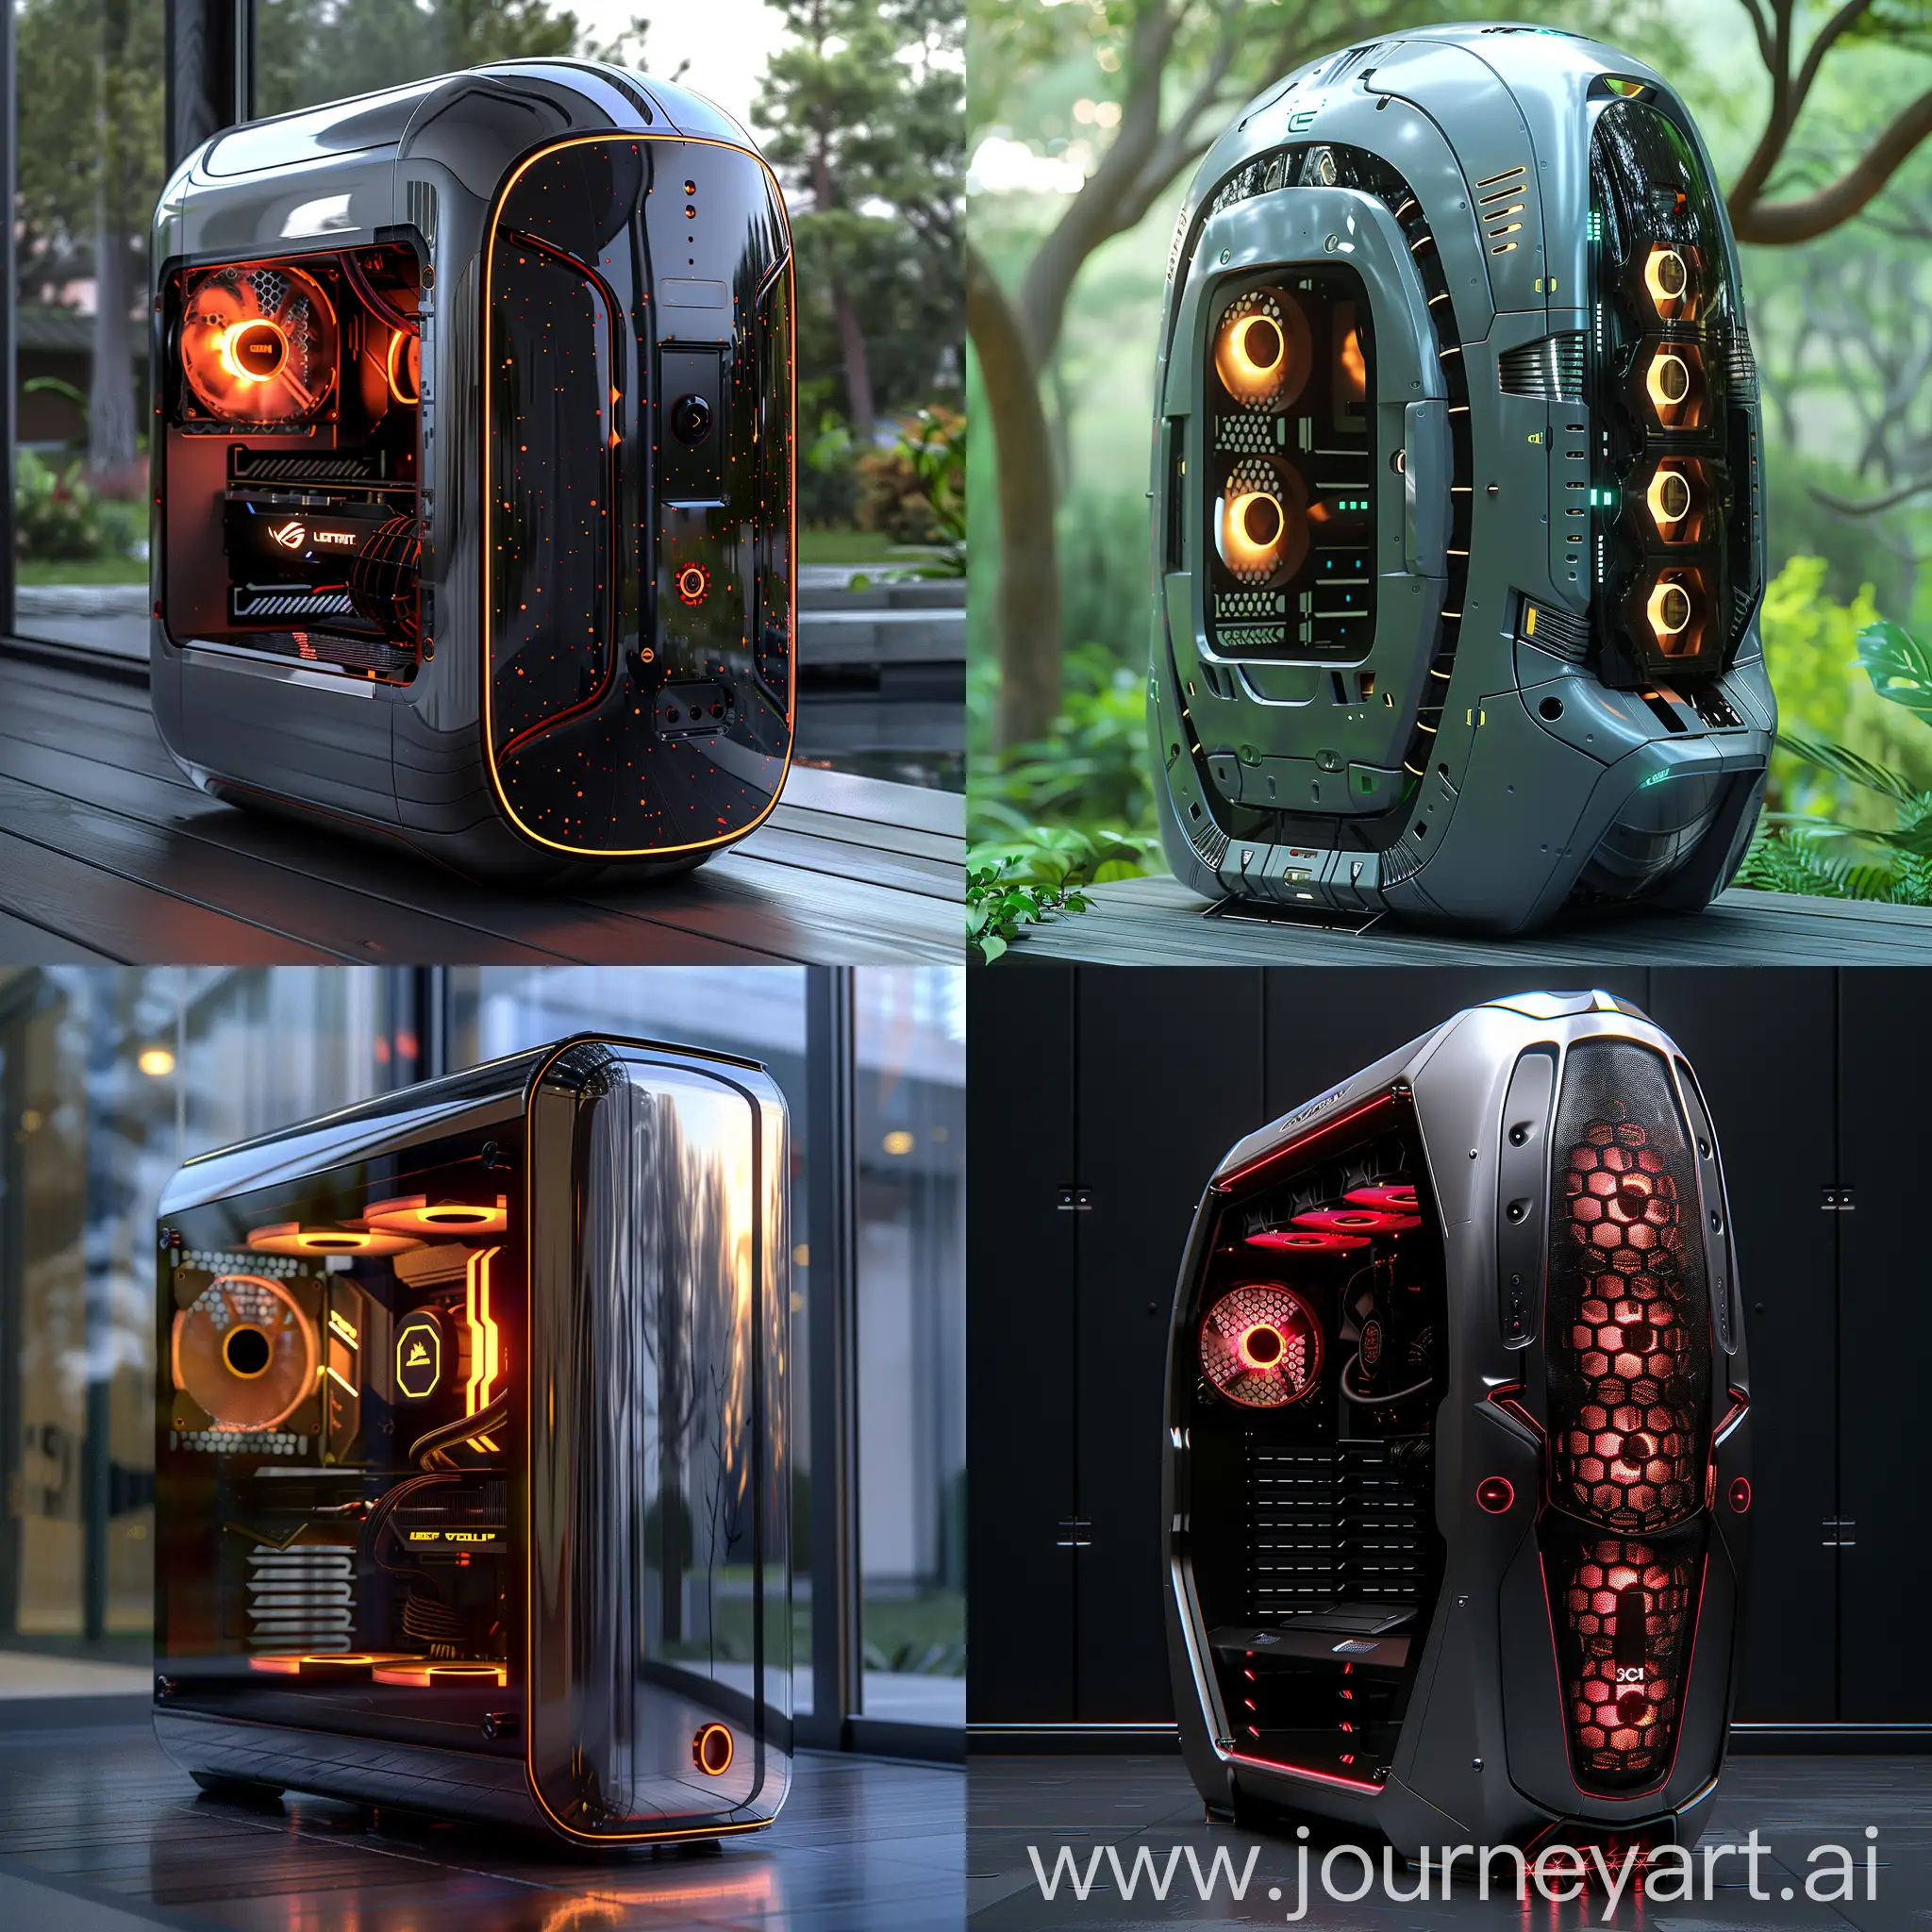 Futuristic PC case, ultra-modern, ultramodern, stainless steel, smart materials, high tech, octane render --stylize 1000